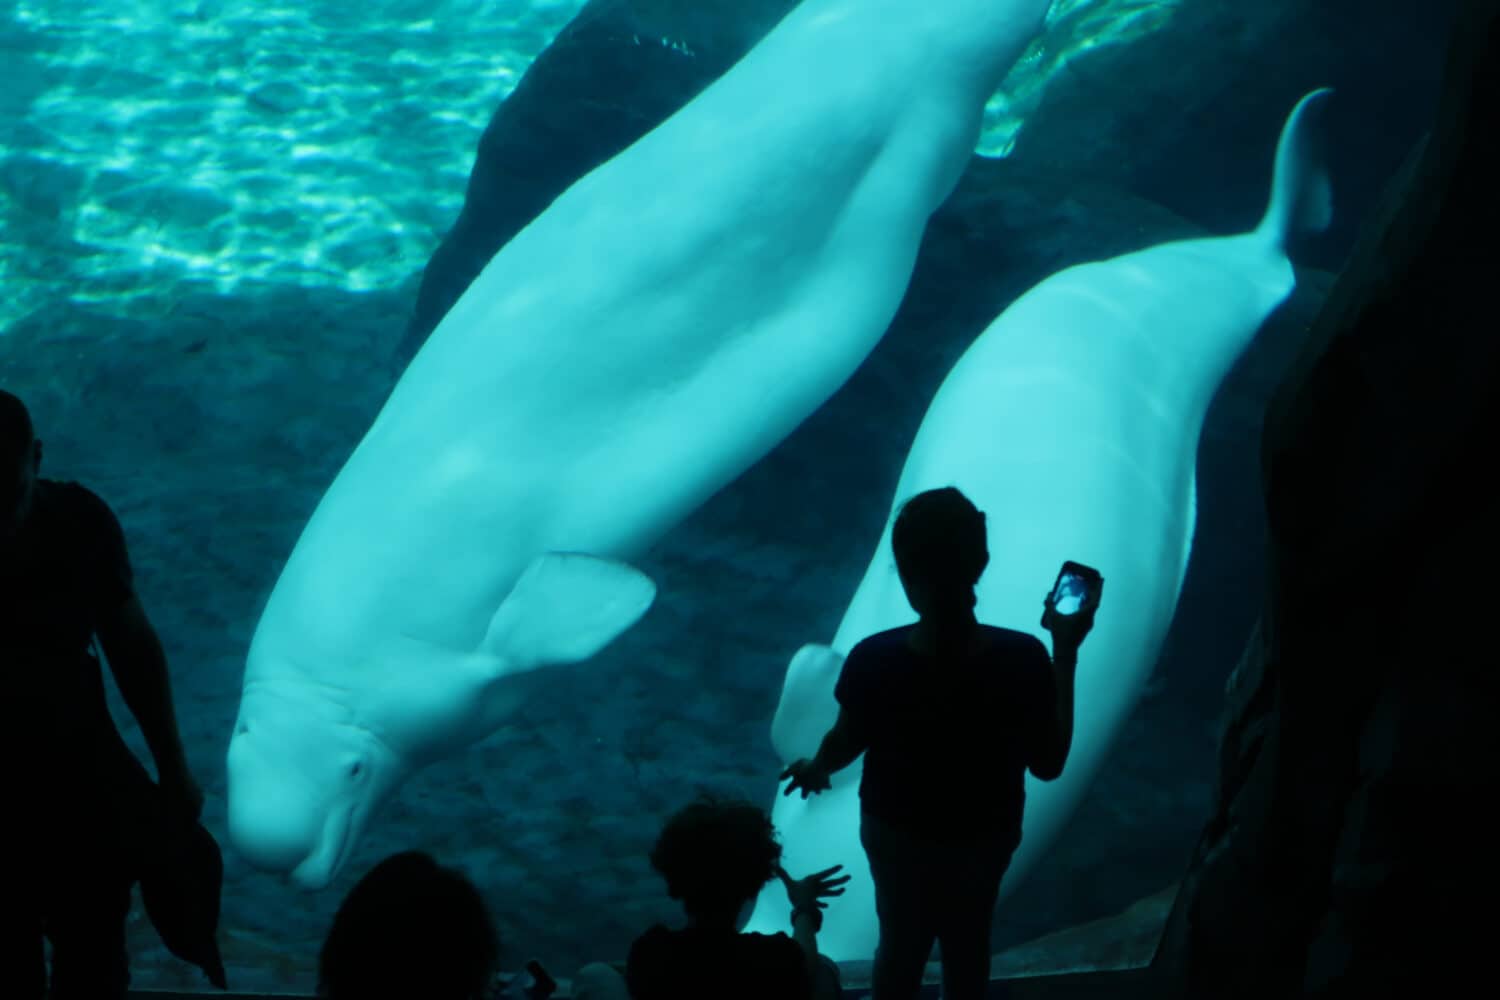 Beluga whales playing in an aquarium